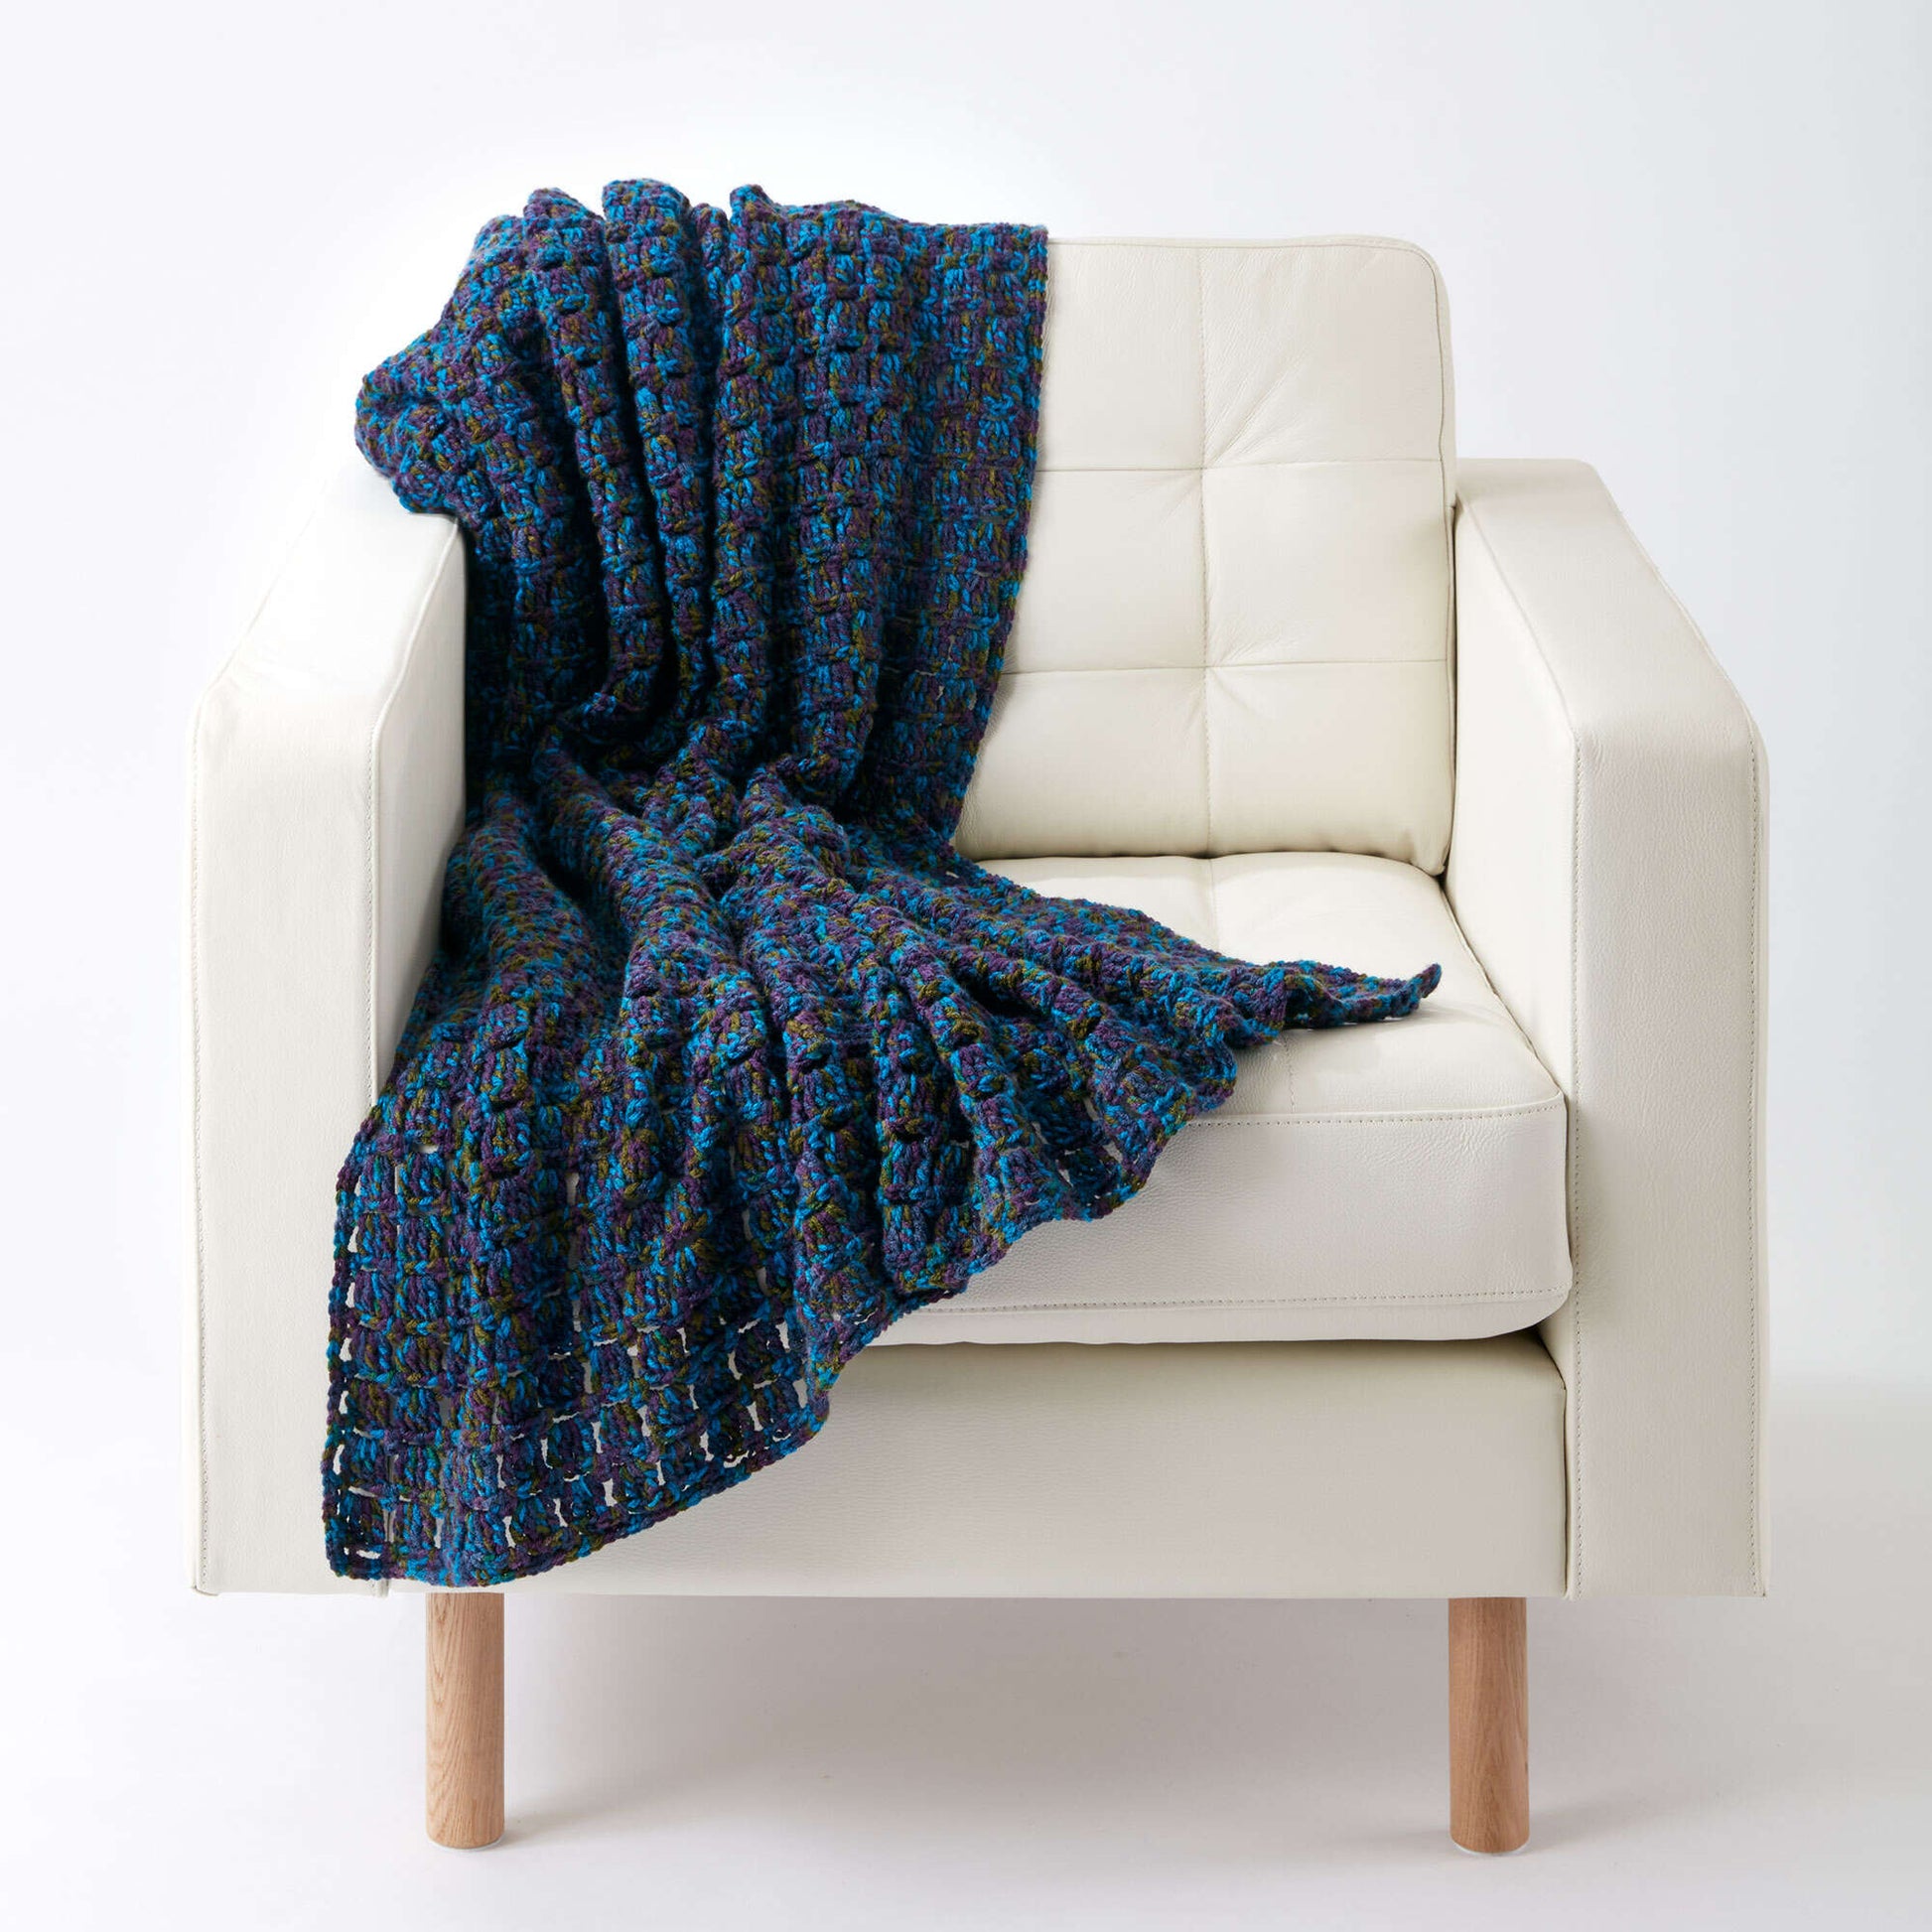 Free Caron Tiles In Style Crochet Blanket Pattern